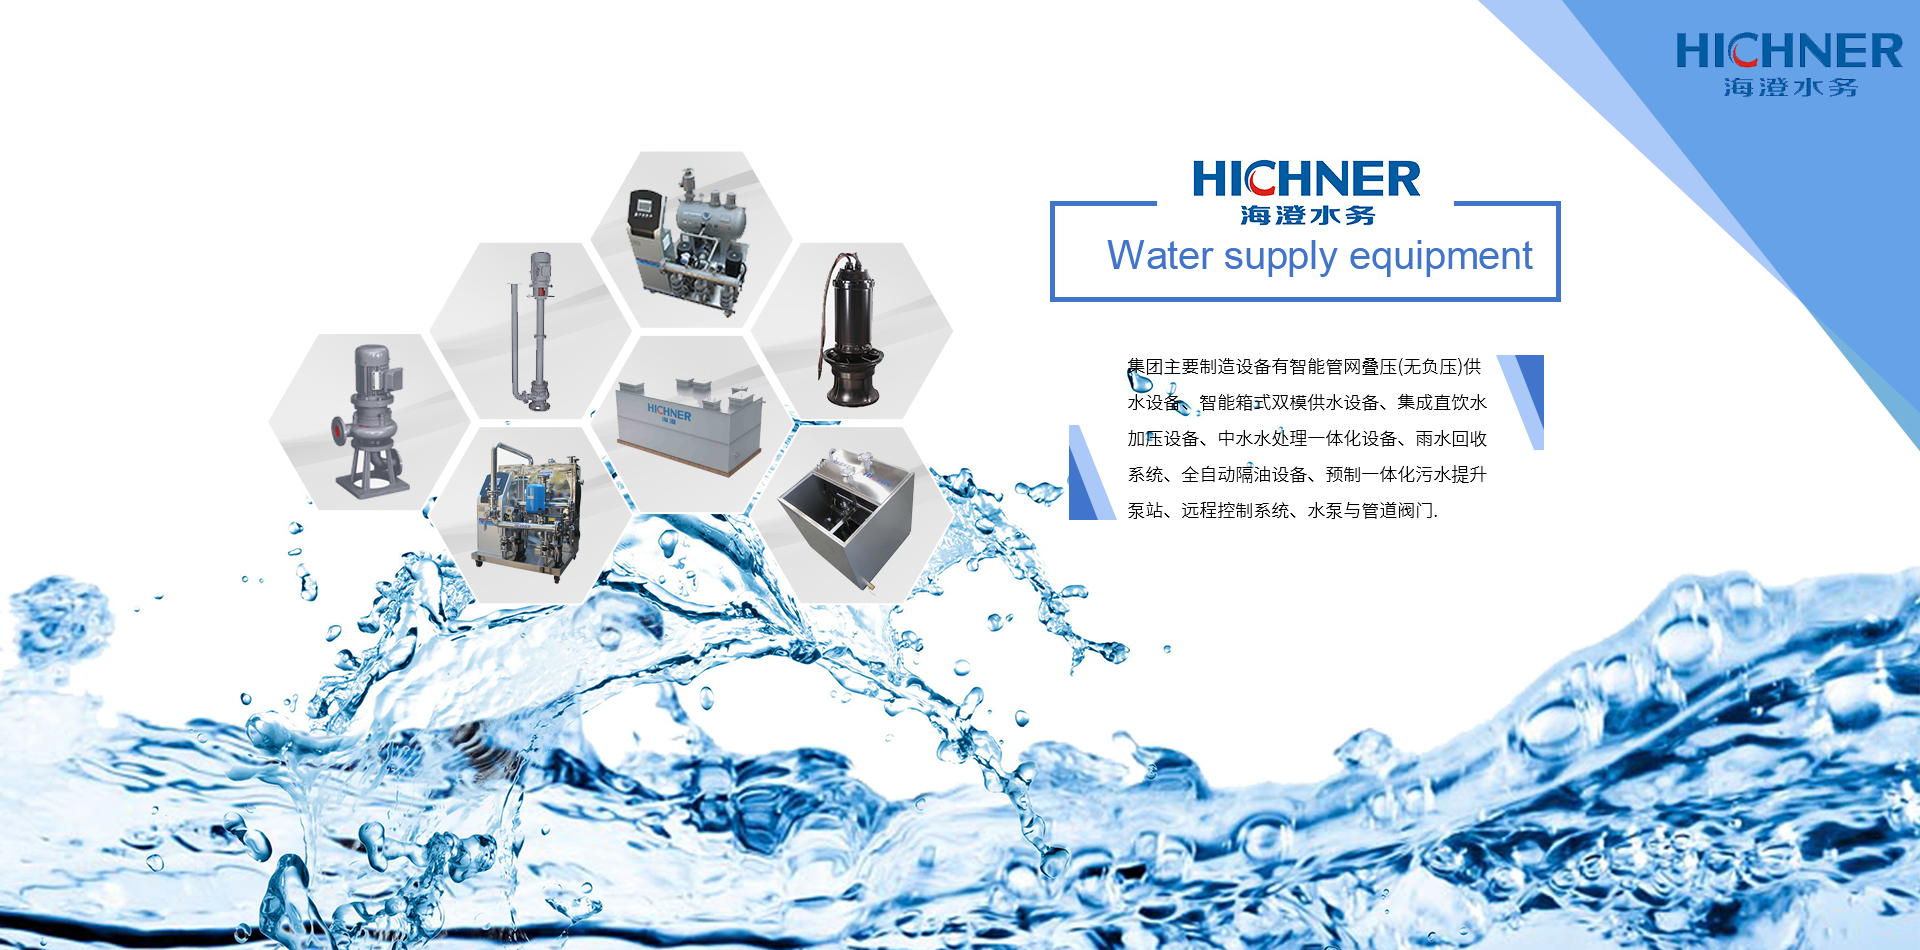 上海海澄水務科技集團有限公司